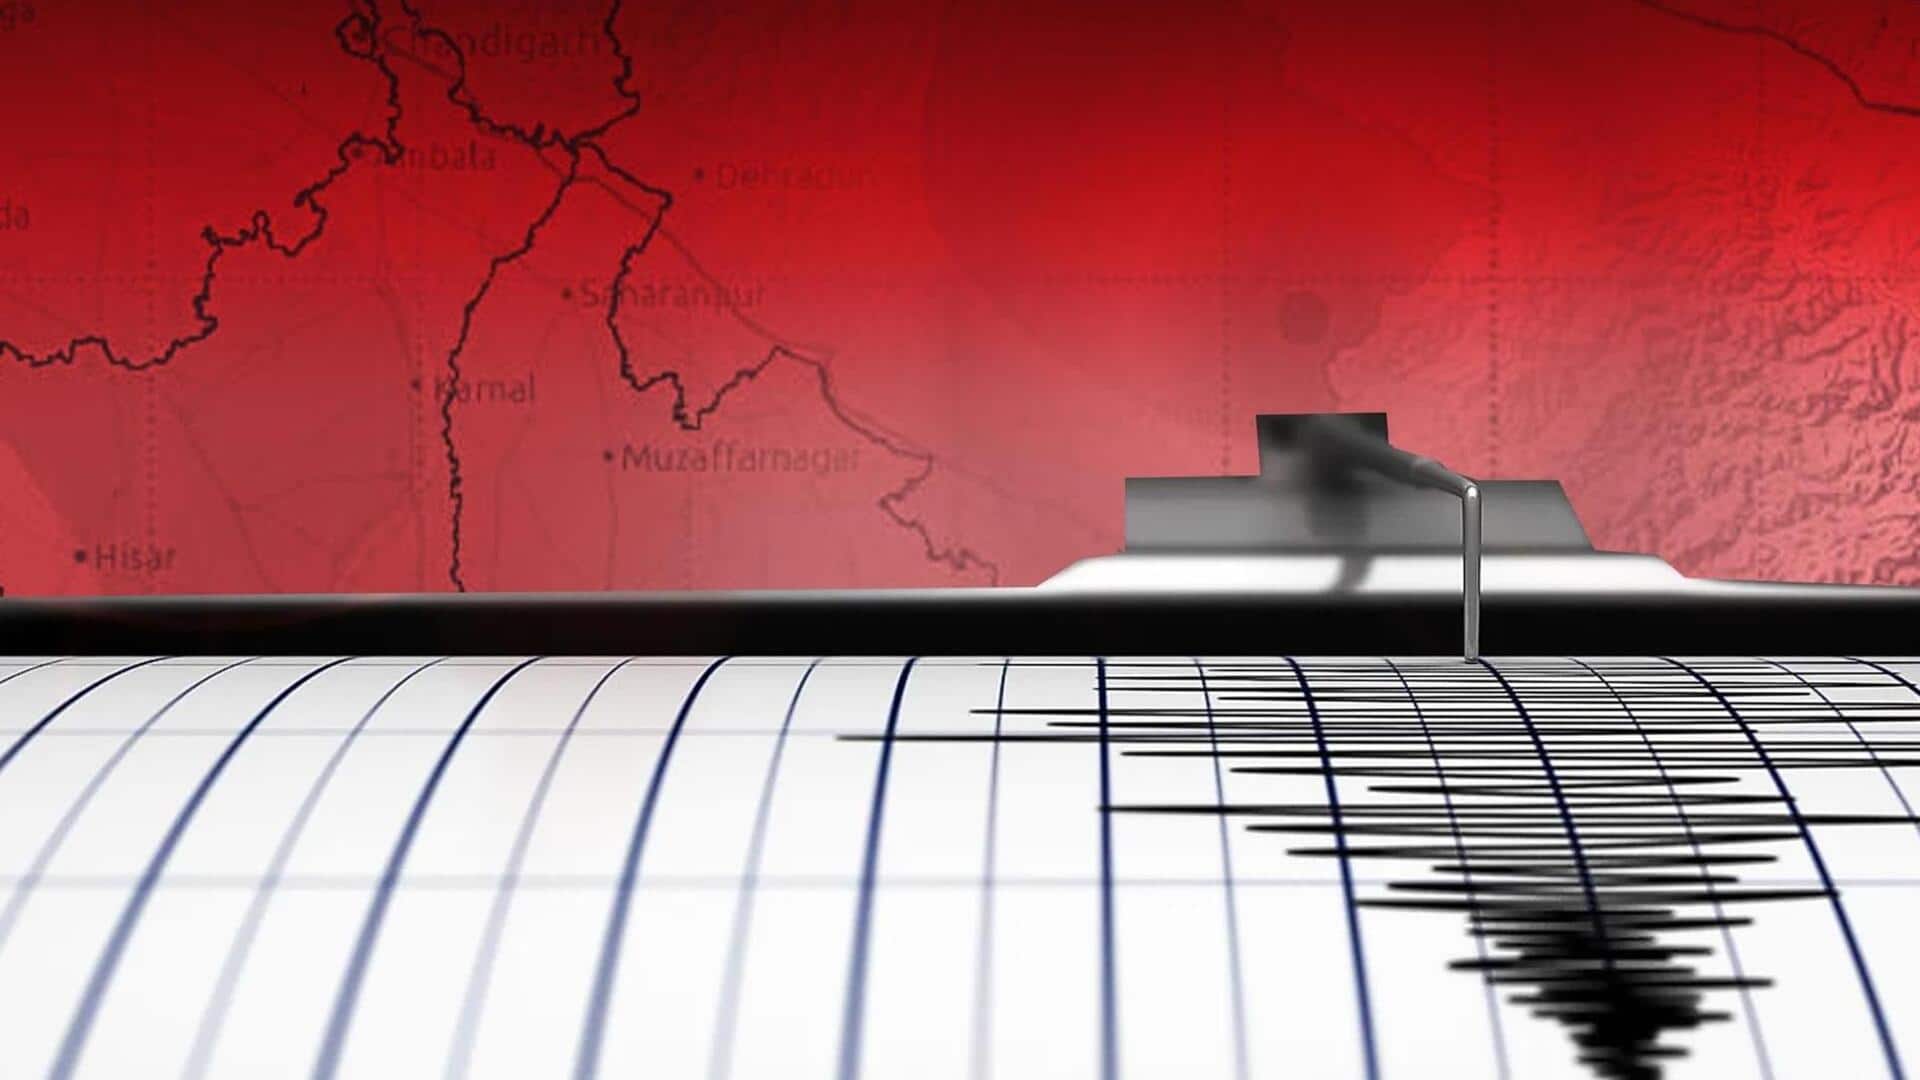 असम में महसूस किए गए भूकंप के झटके, 3.7 मापी गई तीव्रता